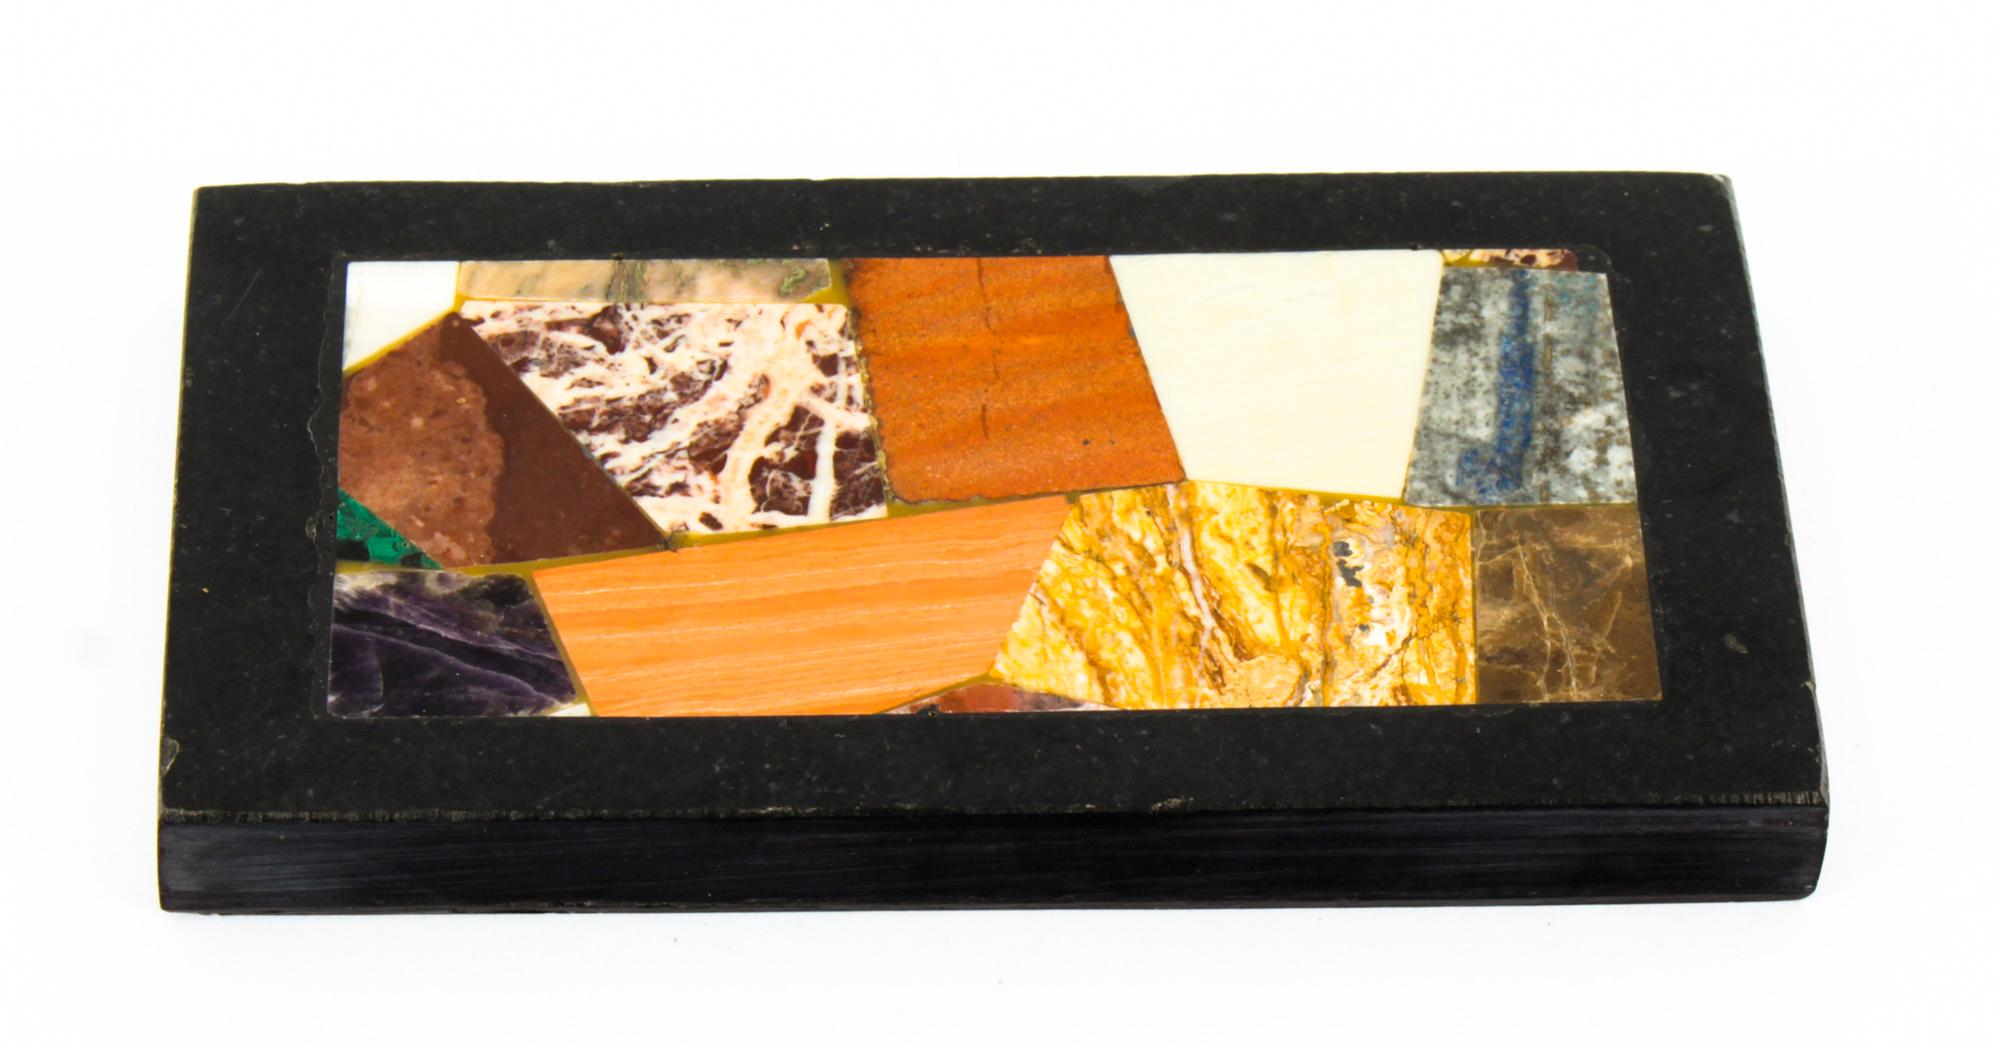 Dies ist eine hervorragende dekorative antike italienische Grand Tour Marmor Pietra Dura montiert Schreibtisch Briefbeschwerer, um 1880 in Datum.
 
Dieser prächtige rechteckige Briefbeschwerer ist mit einem üppigen Arrangement aus Halbedelsteinen